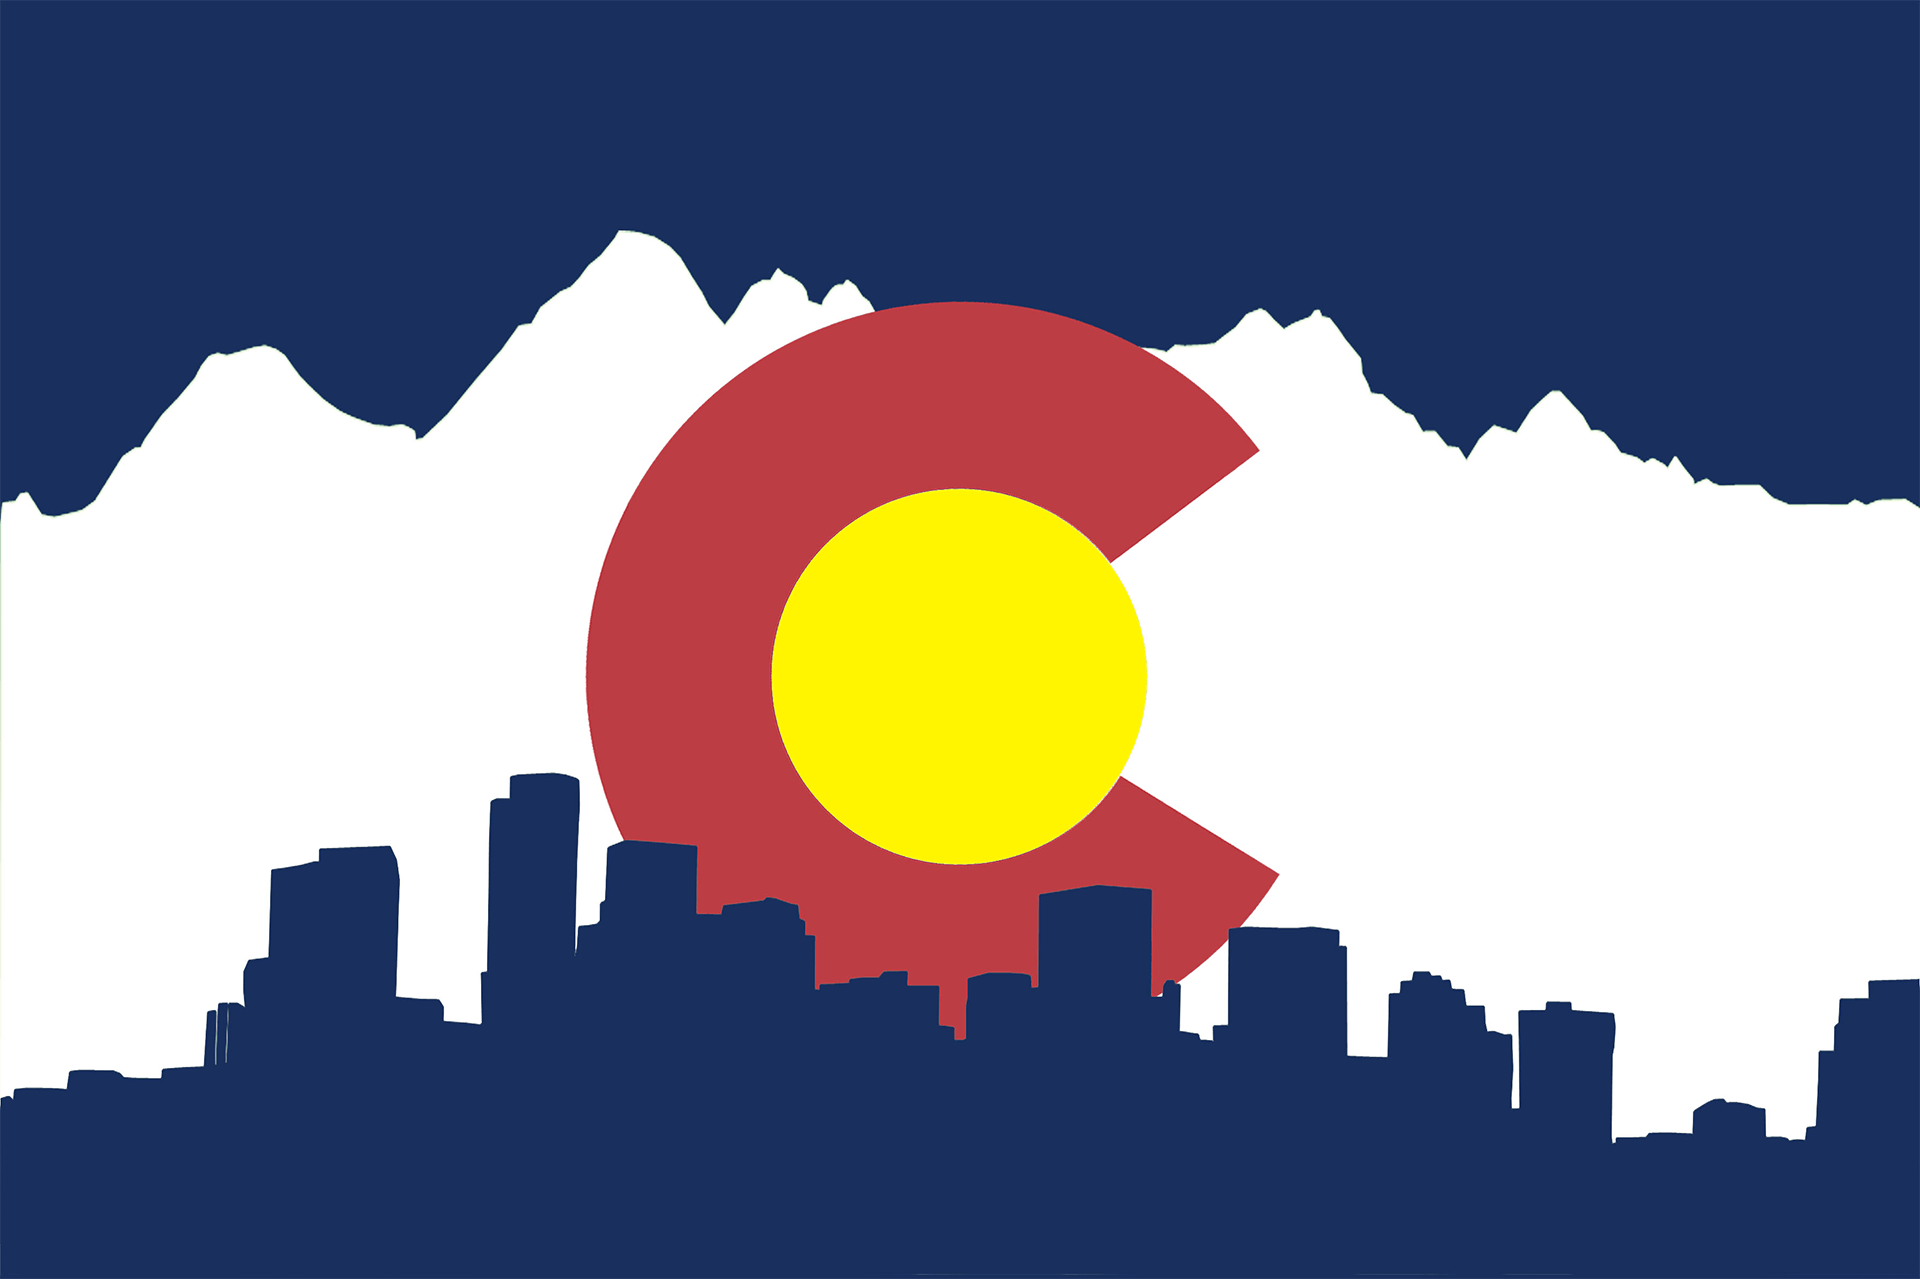 Colorado Logo - Colorado Flag I designed (x-post from r/wallpapers) : Colorado